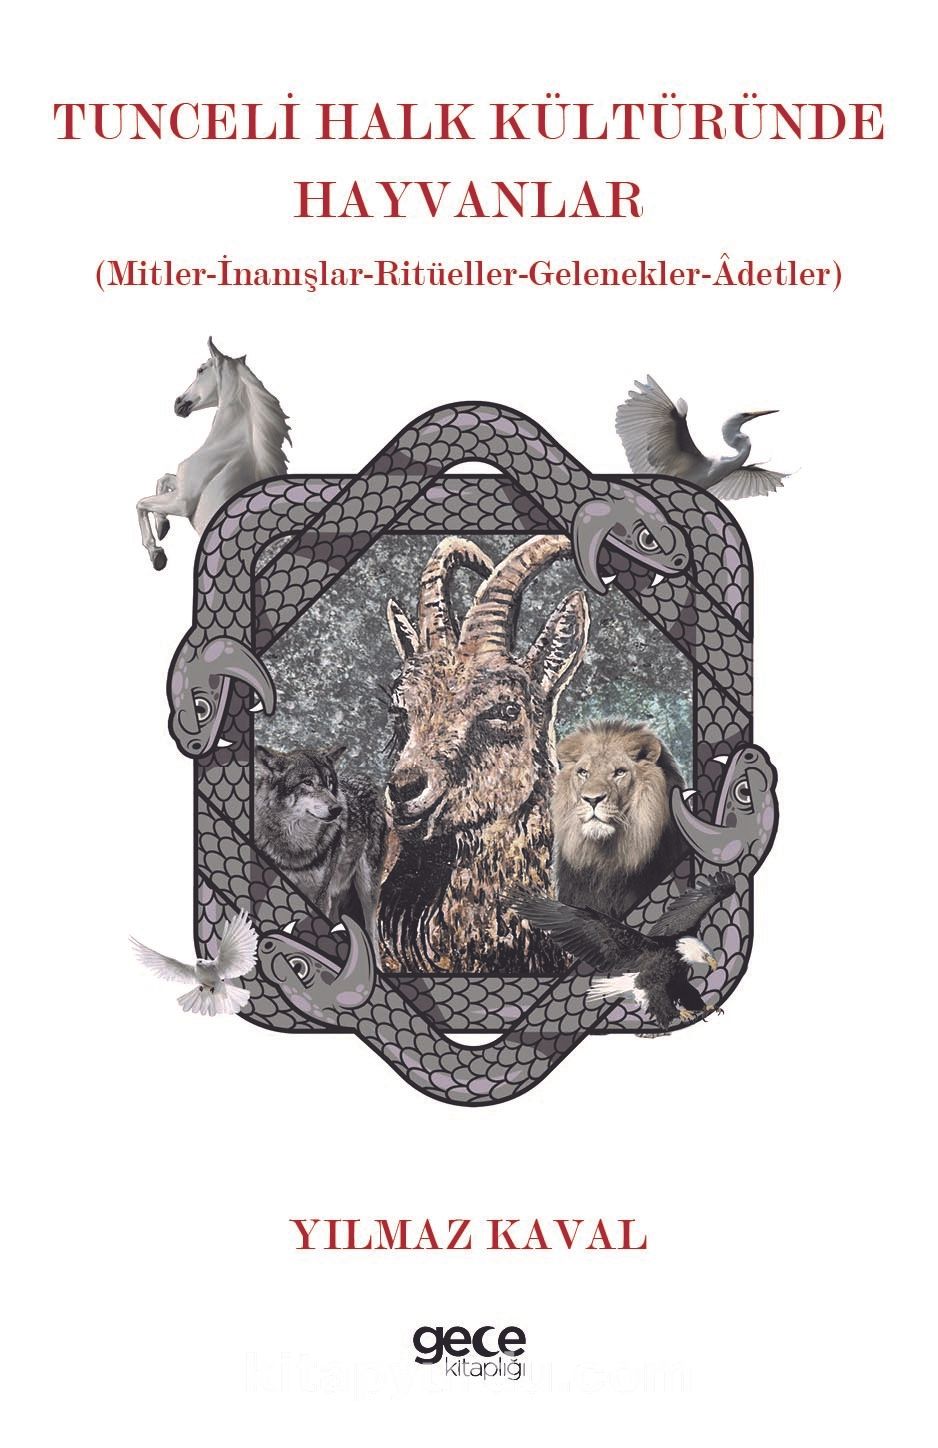 Tunceli Halk Kültüründe Hayvanlar & Mitler-İnanışlar-Ritüeller-Gelenekler-Âdetler